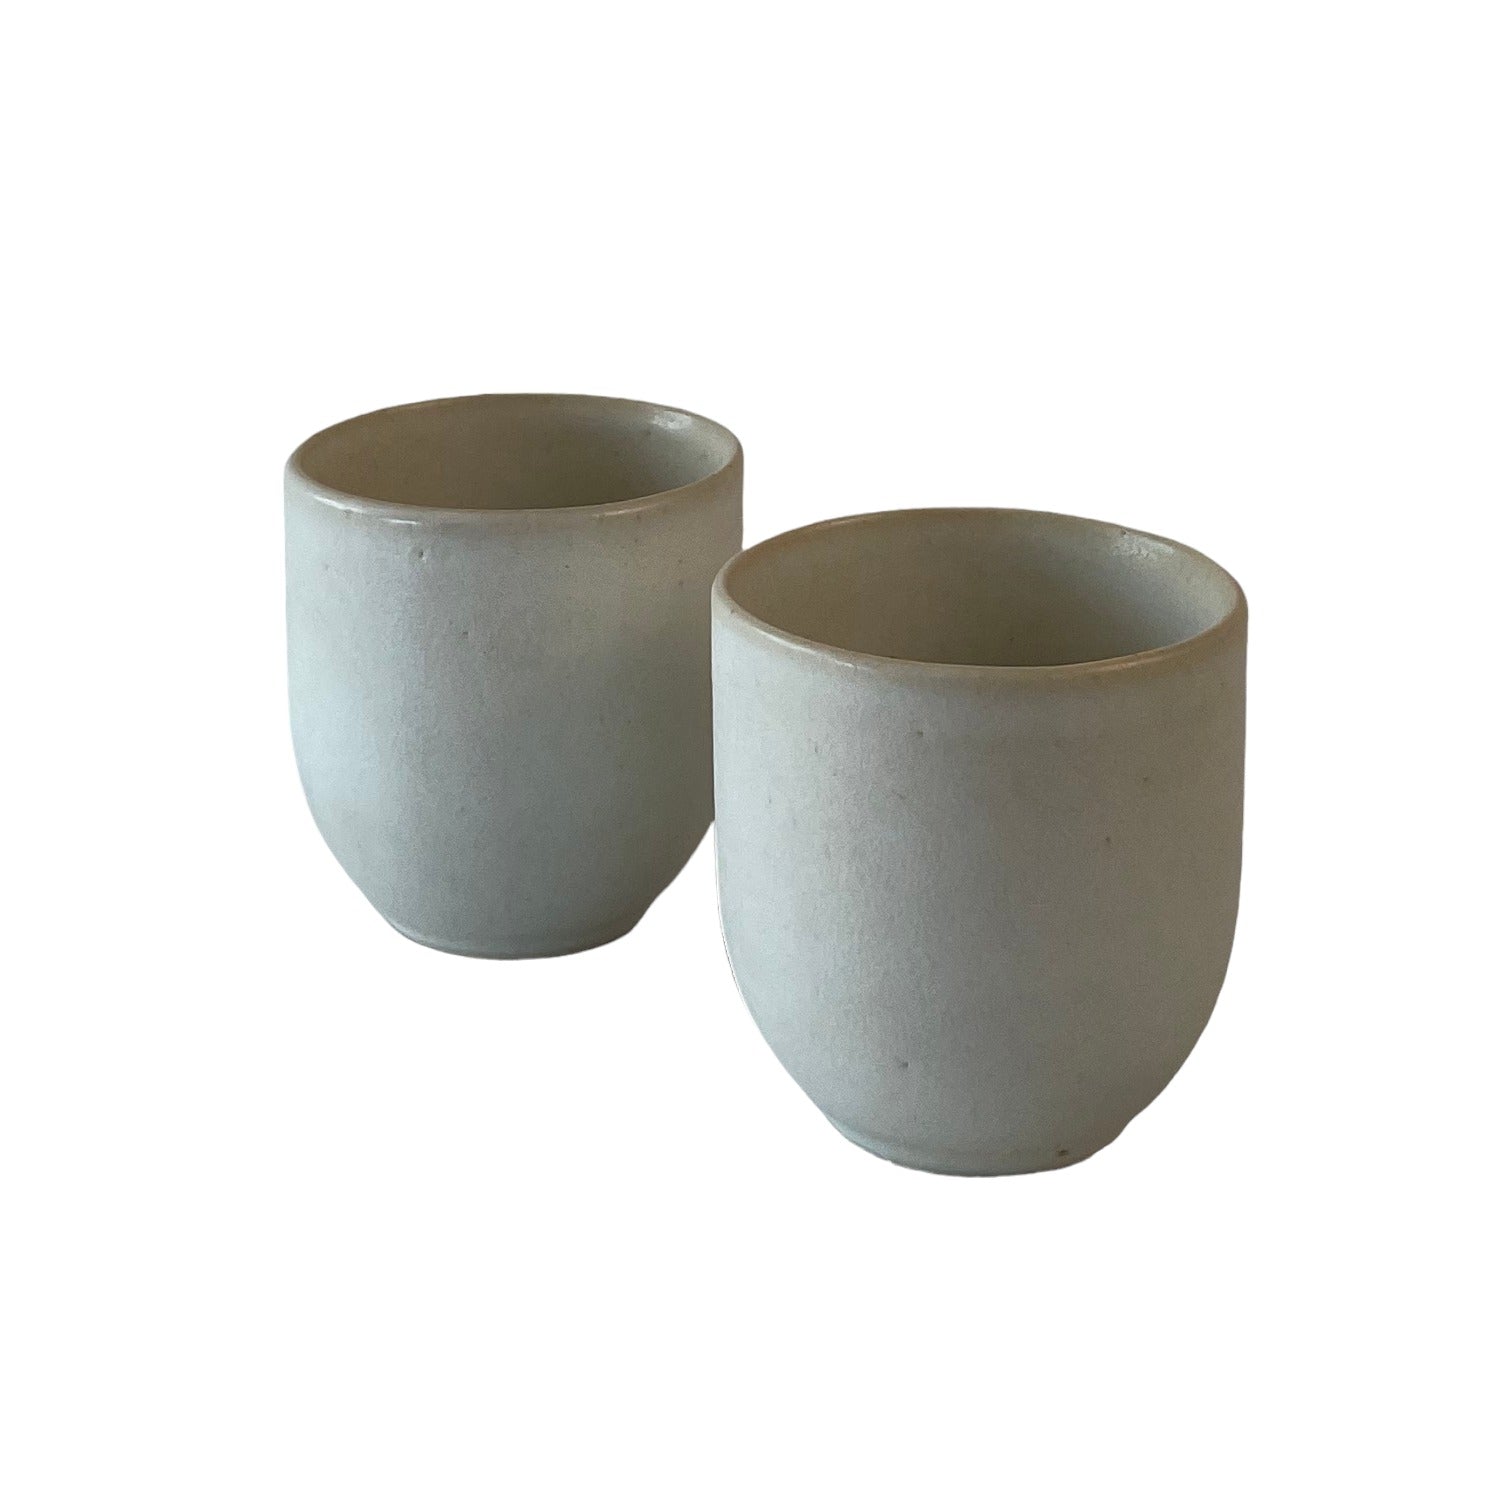 Stoneware or White Stoneware Clay